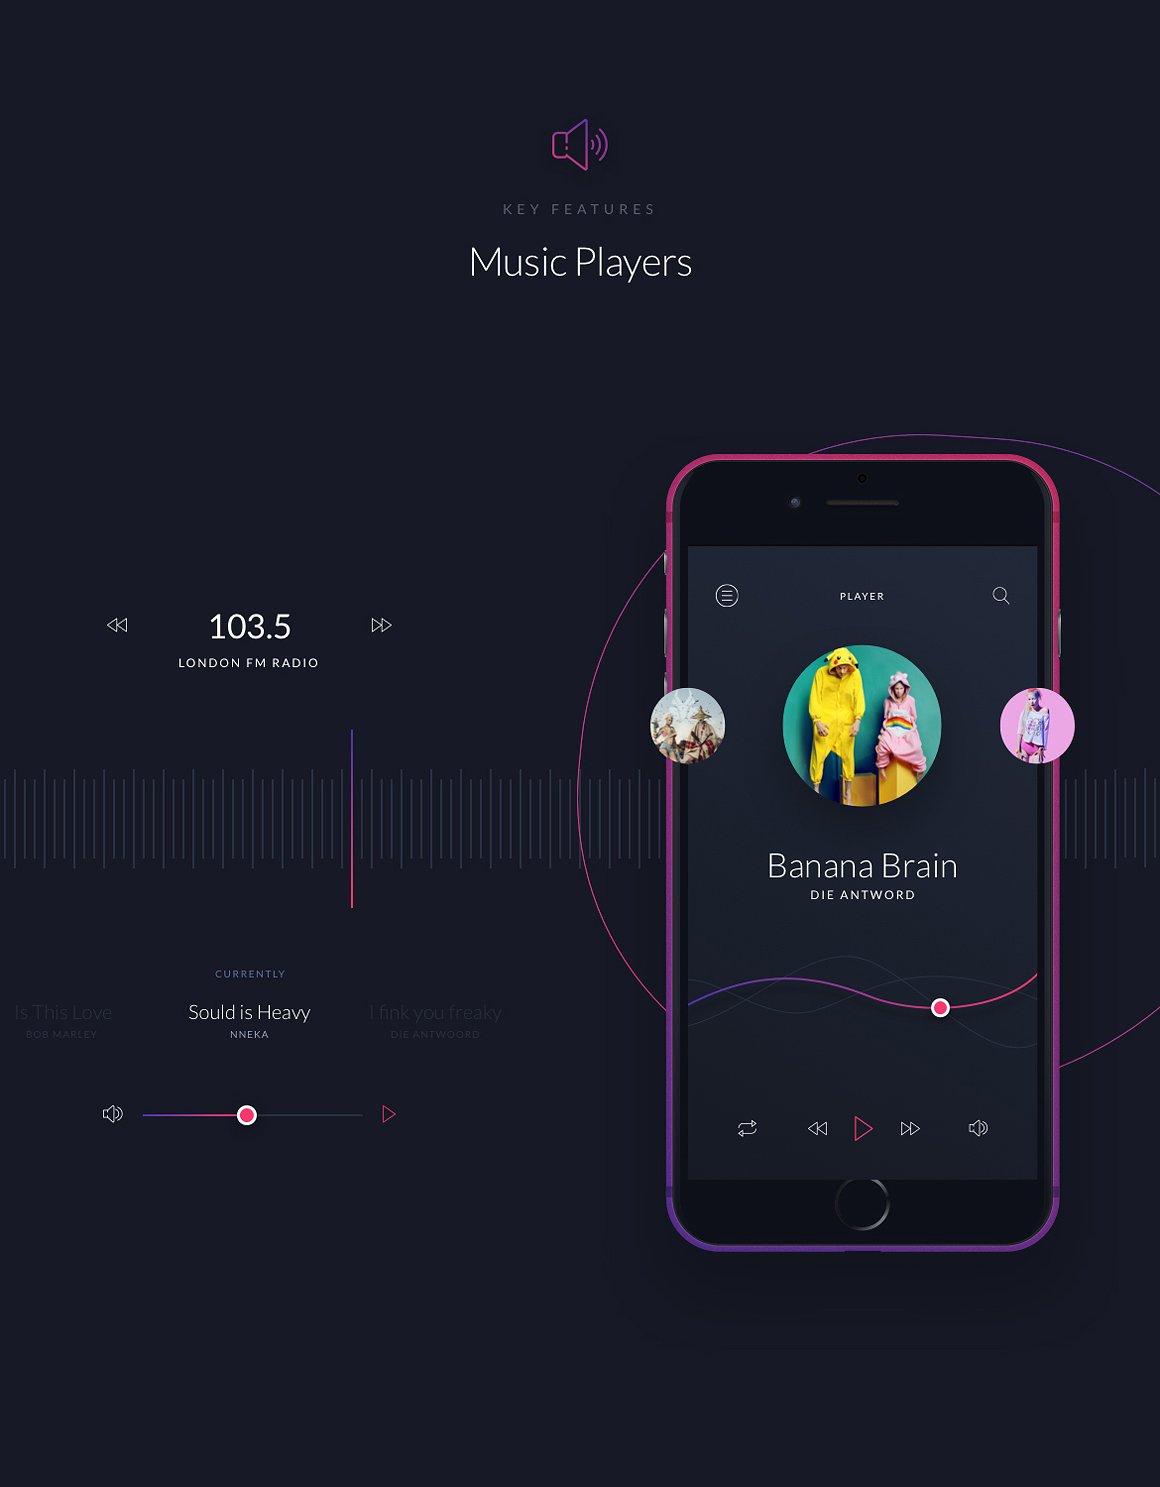 酷黑风格音乐应用设计 UI 套件 Music UI/UX Mobile App Kit插图(6)